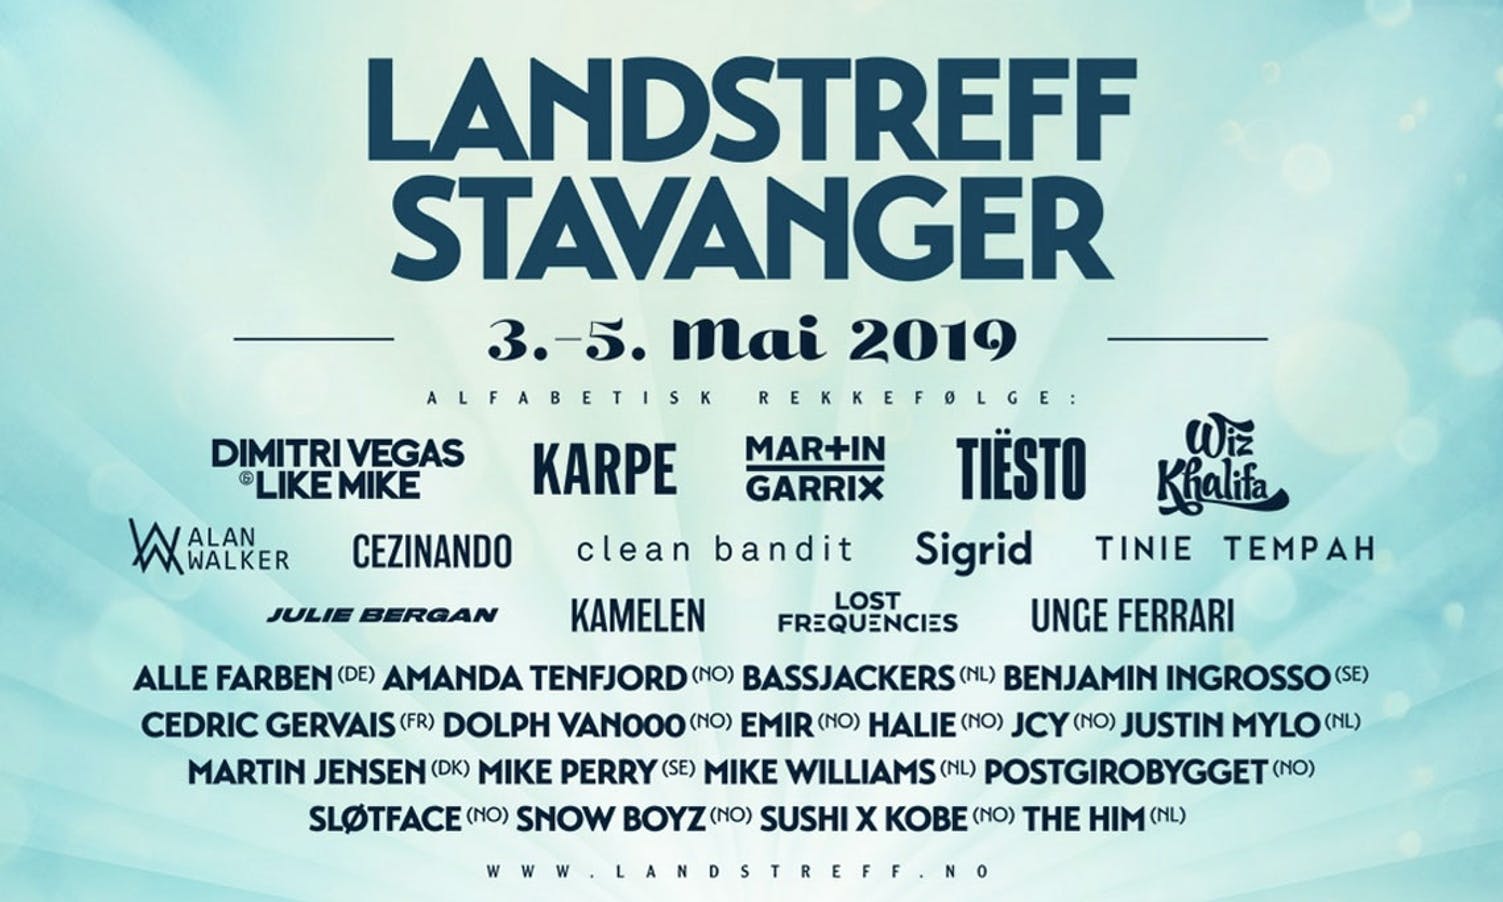 Artistane som skal spela på Landstreff Stavanger (landstreff.no)